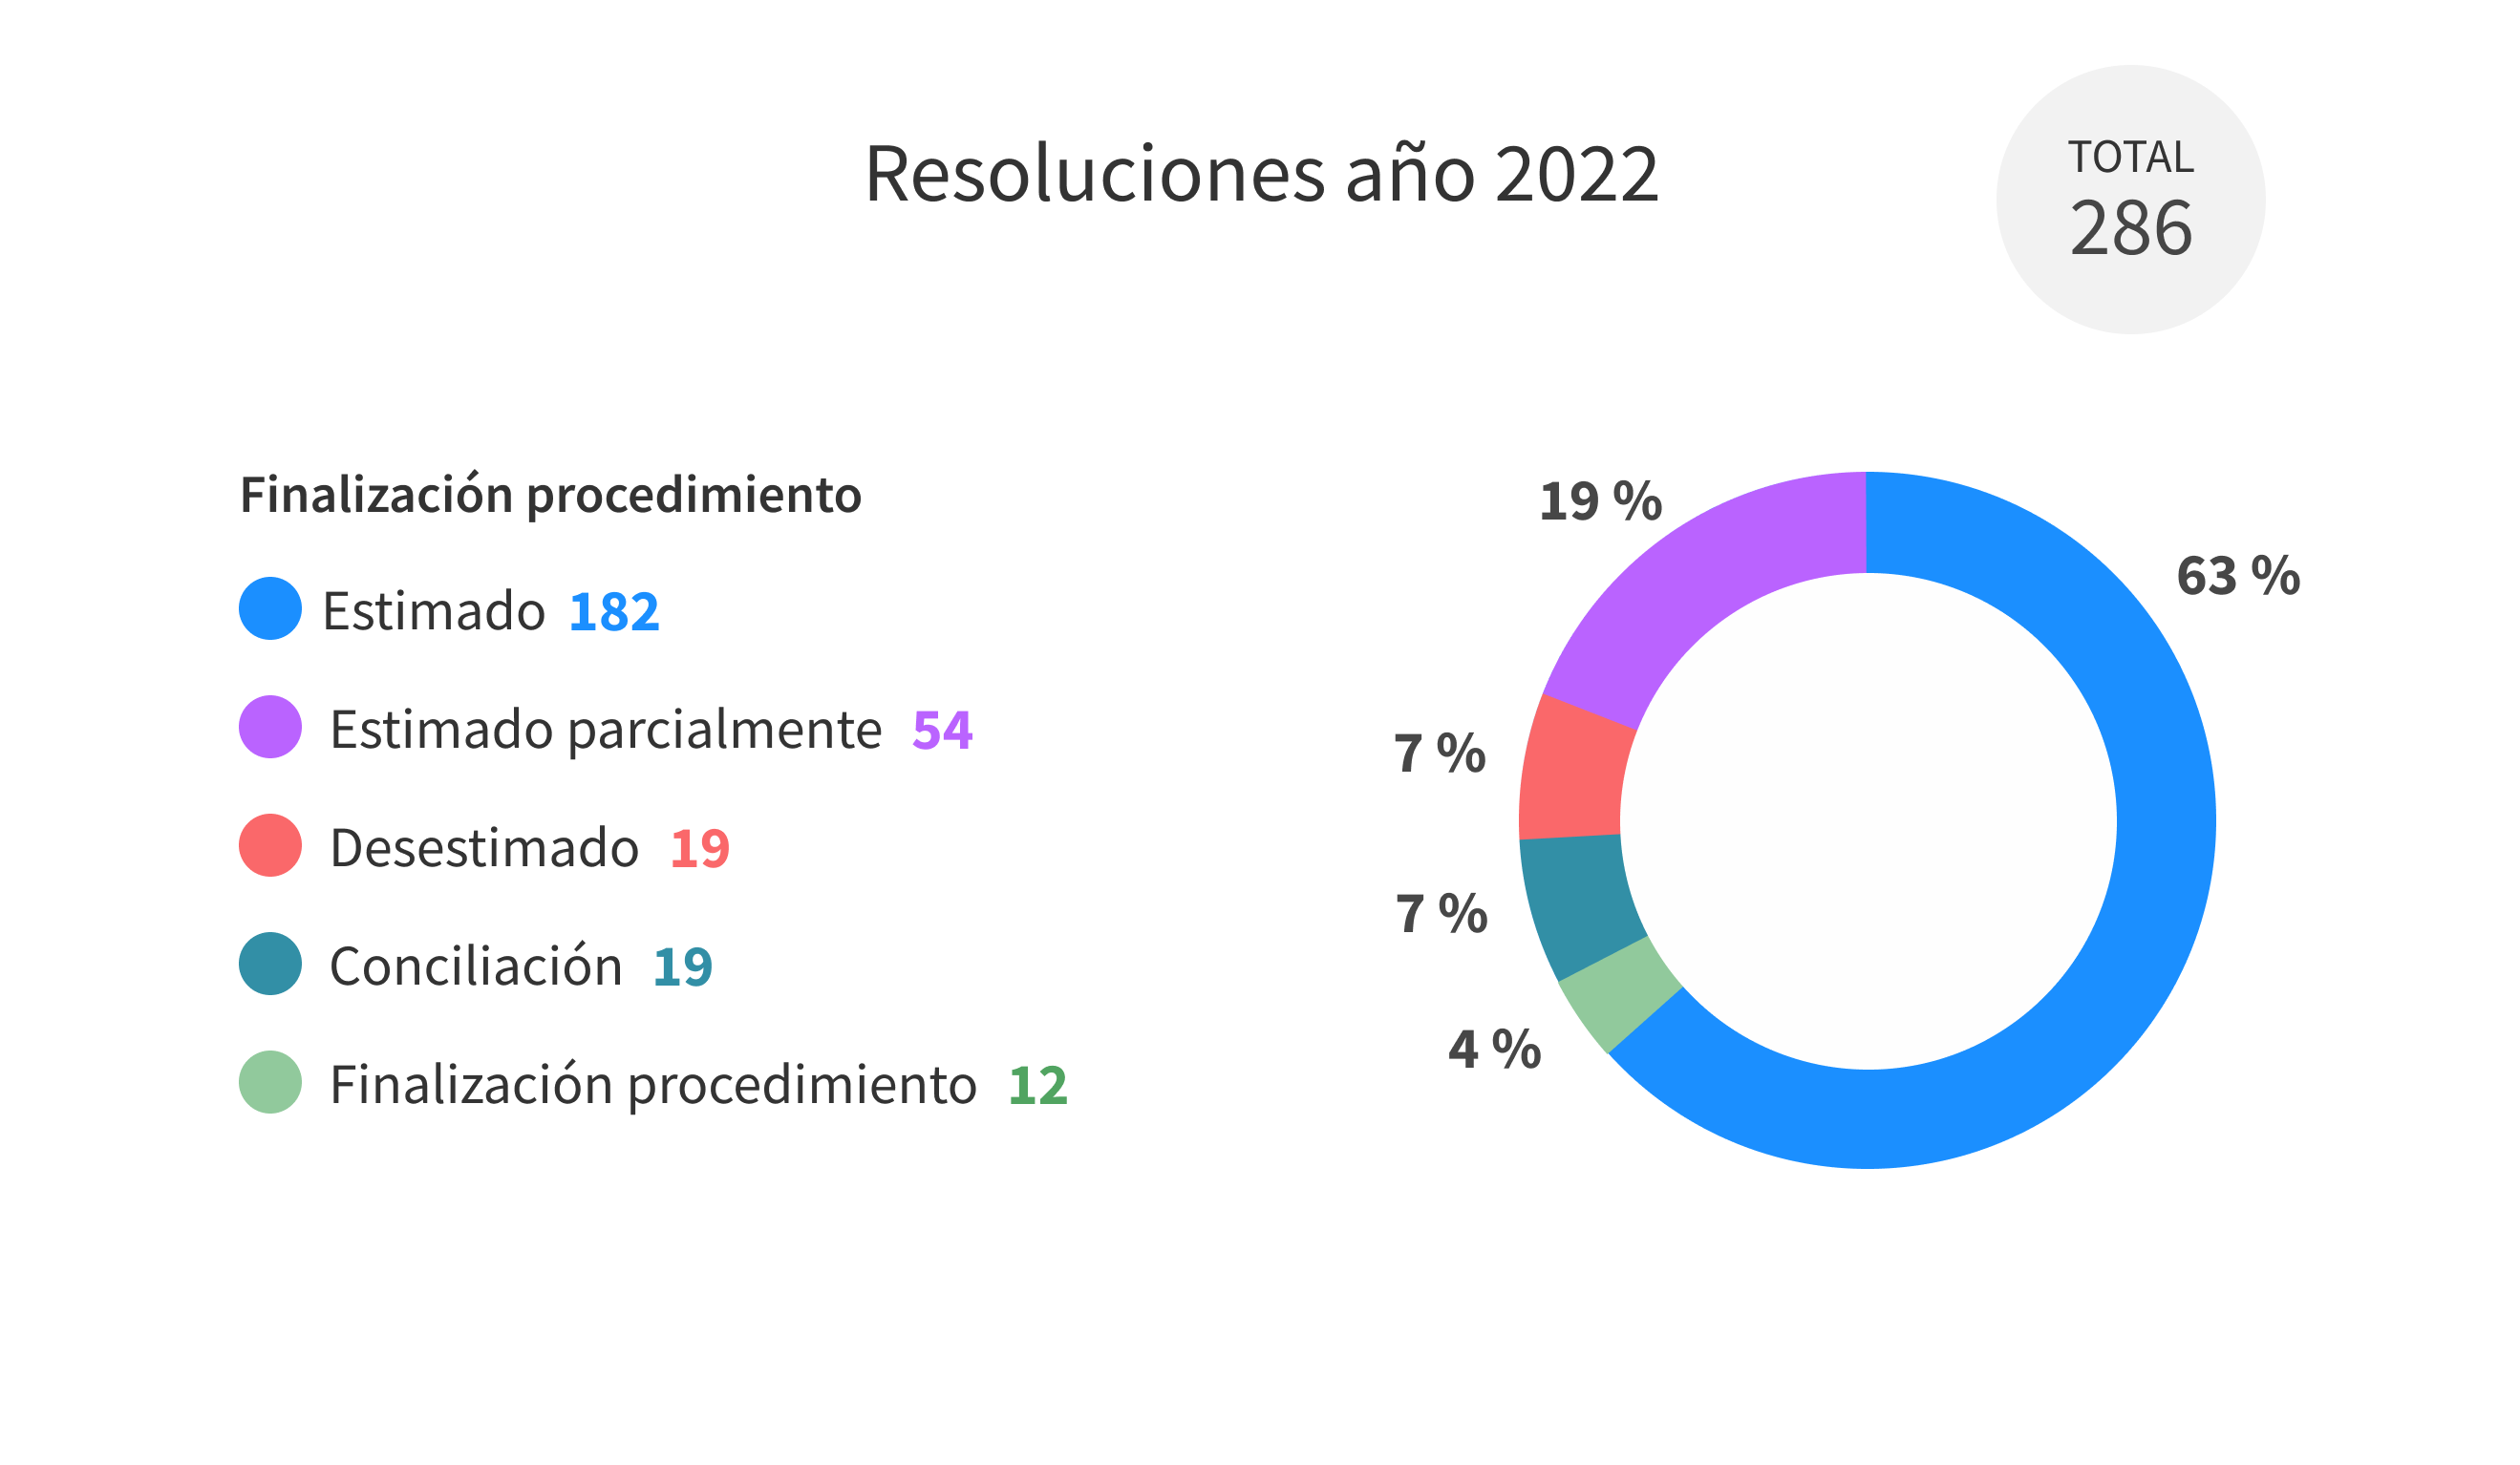 Resoluciones año 2022. Total: 286. Estimado: 182 (63 %), Estimado parcialmente: 54 (19 %), Desestimado: 19 (7 %), Conciliación: 19 (7 %), Finalización procedimiento: 12 (4 %)